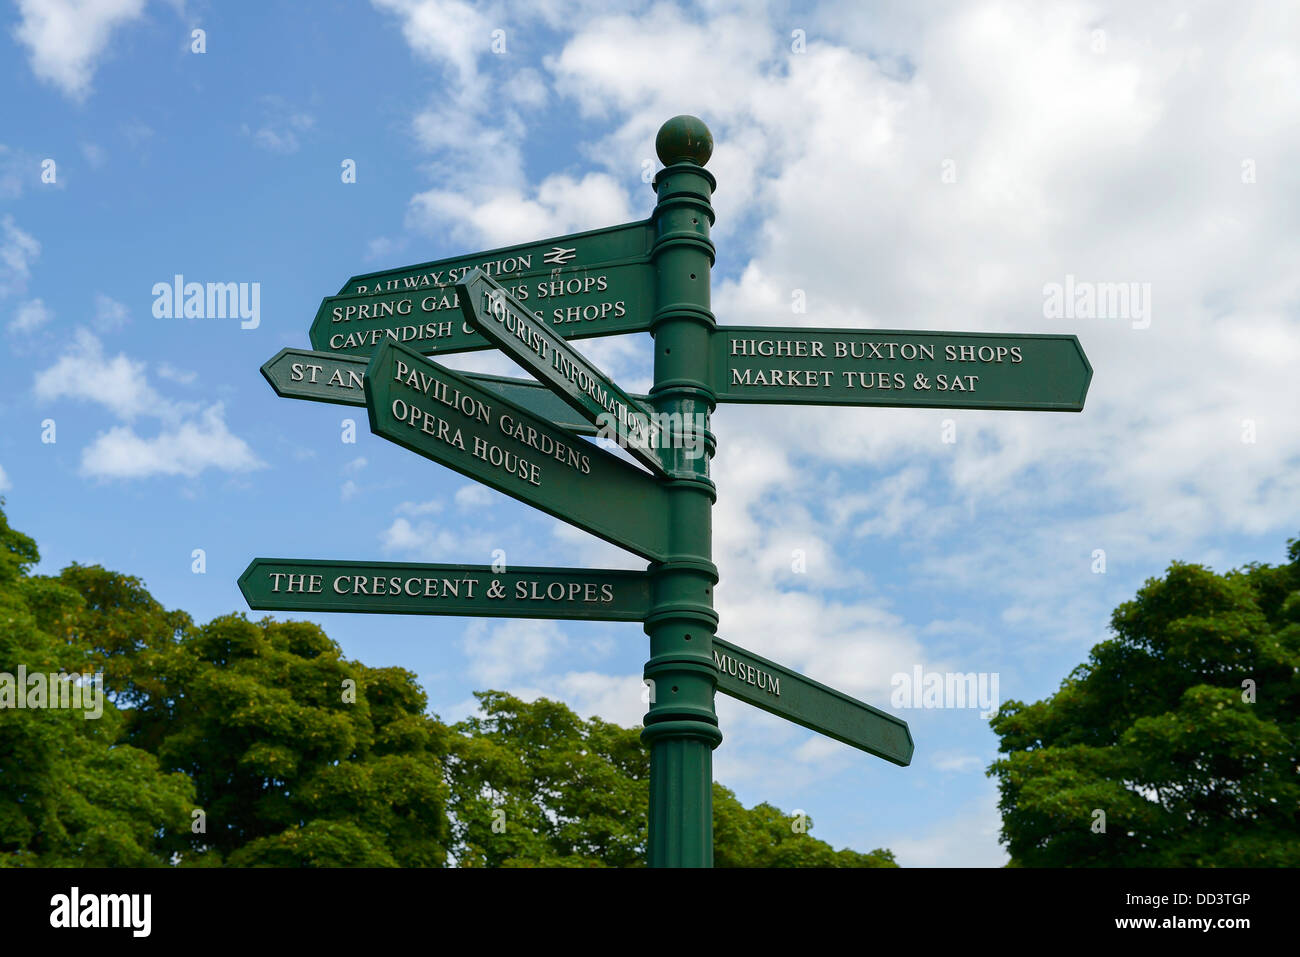 Zeige die touristischen Orte in Buxton Stadt Wegweiser Zentrum UK Stockfoto